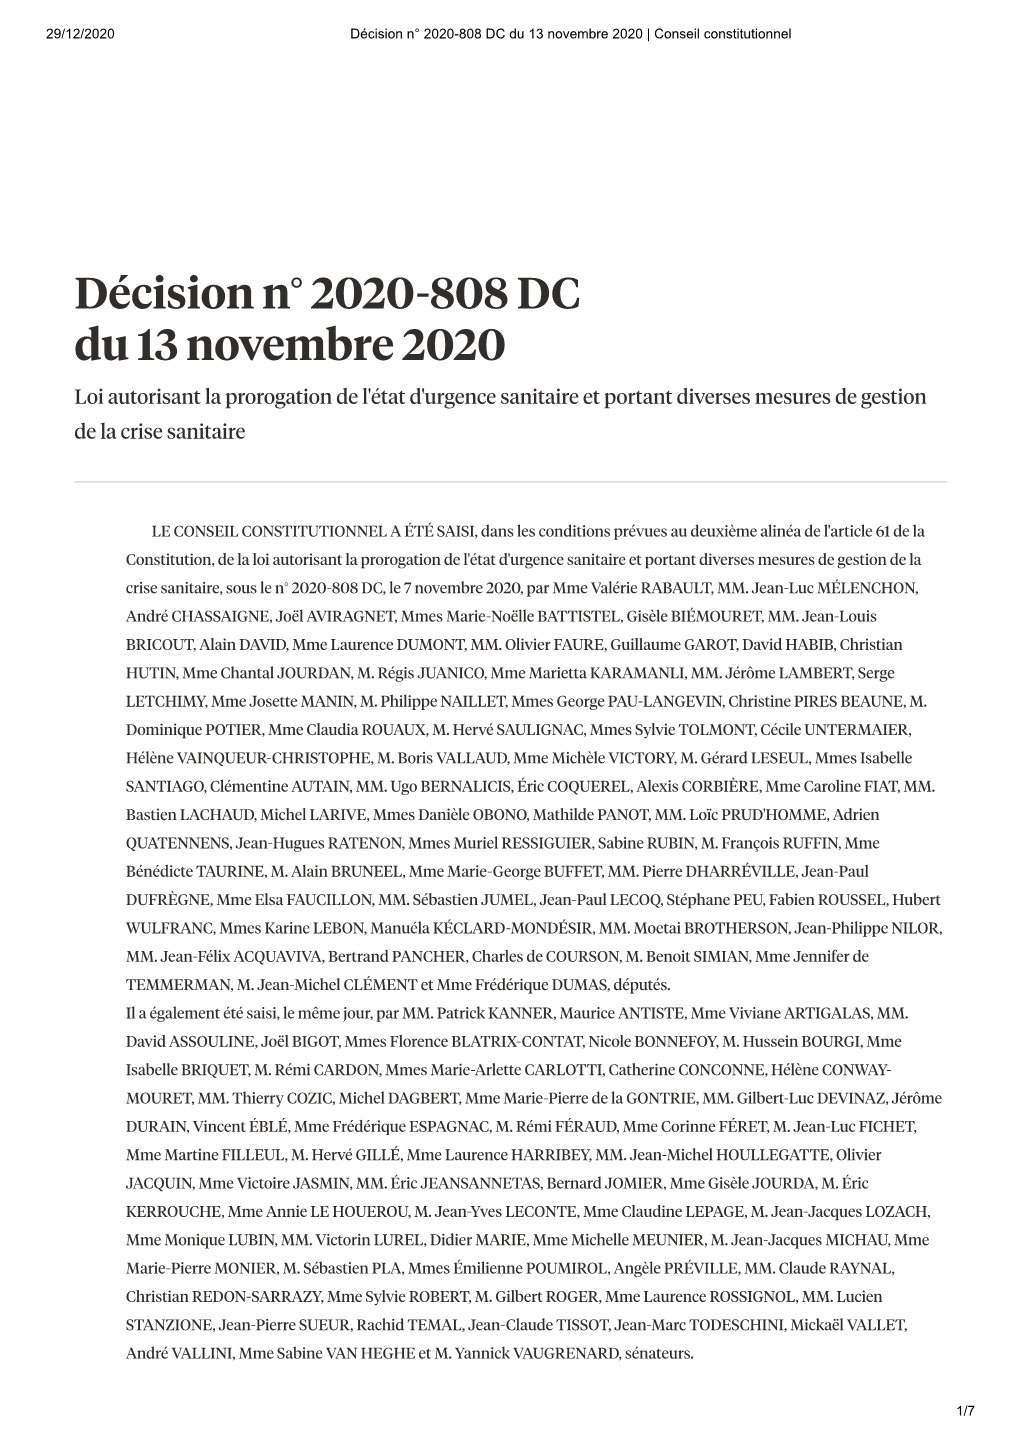 Décision N° 2020-808 DC Du 13 Novembre 2020 | Conseil Constitutionnel